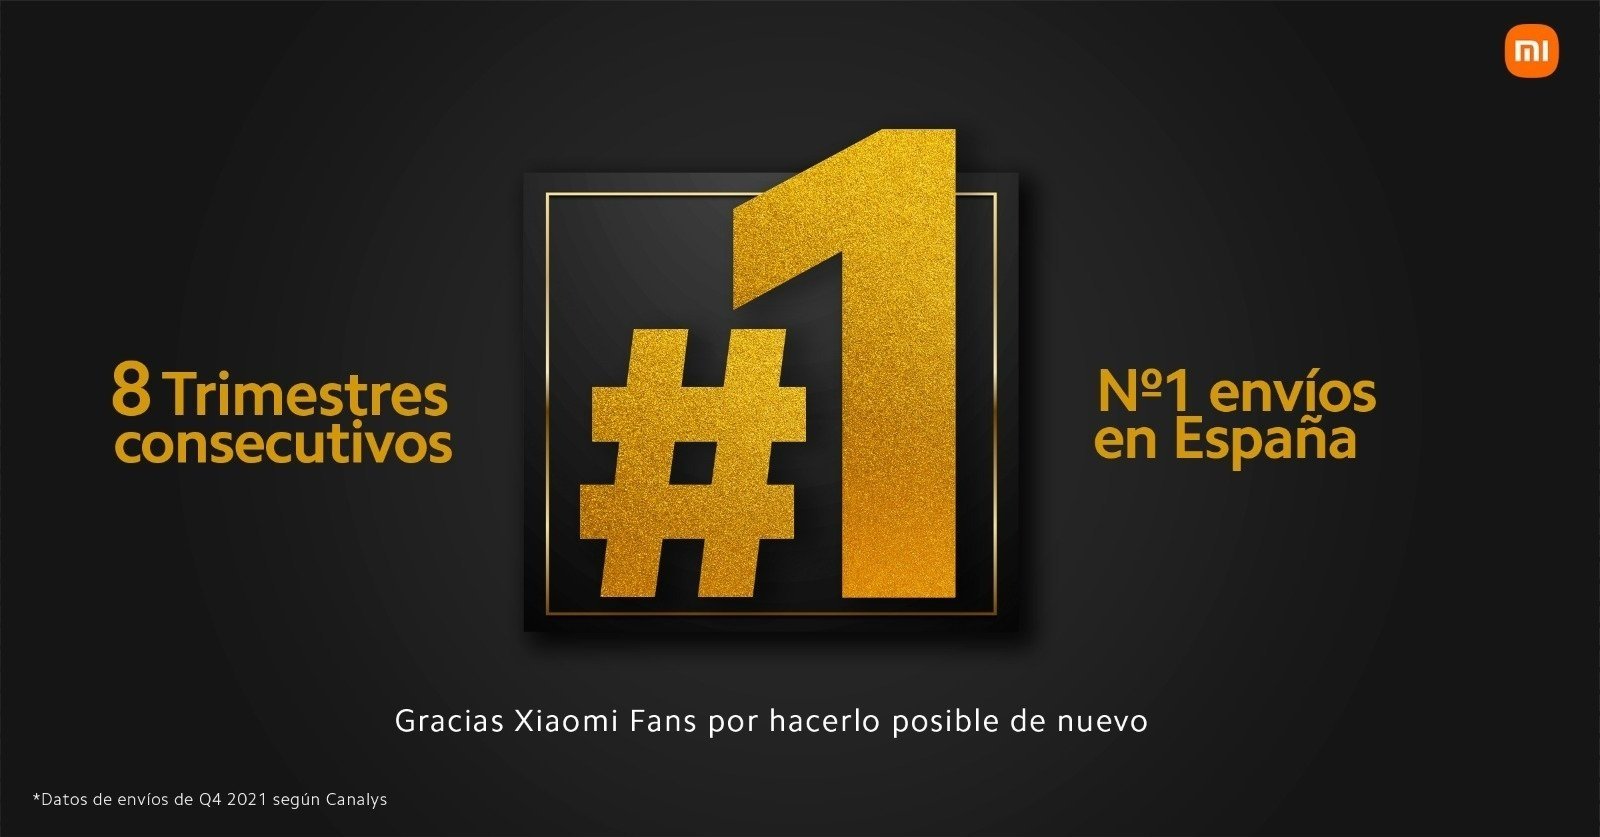 Xiaomi es número 1 del mercado móvil en España